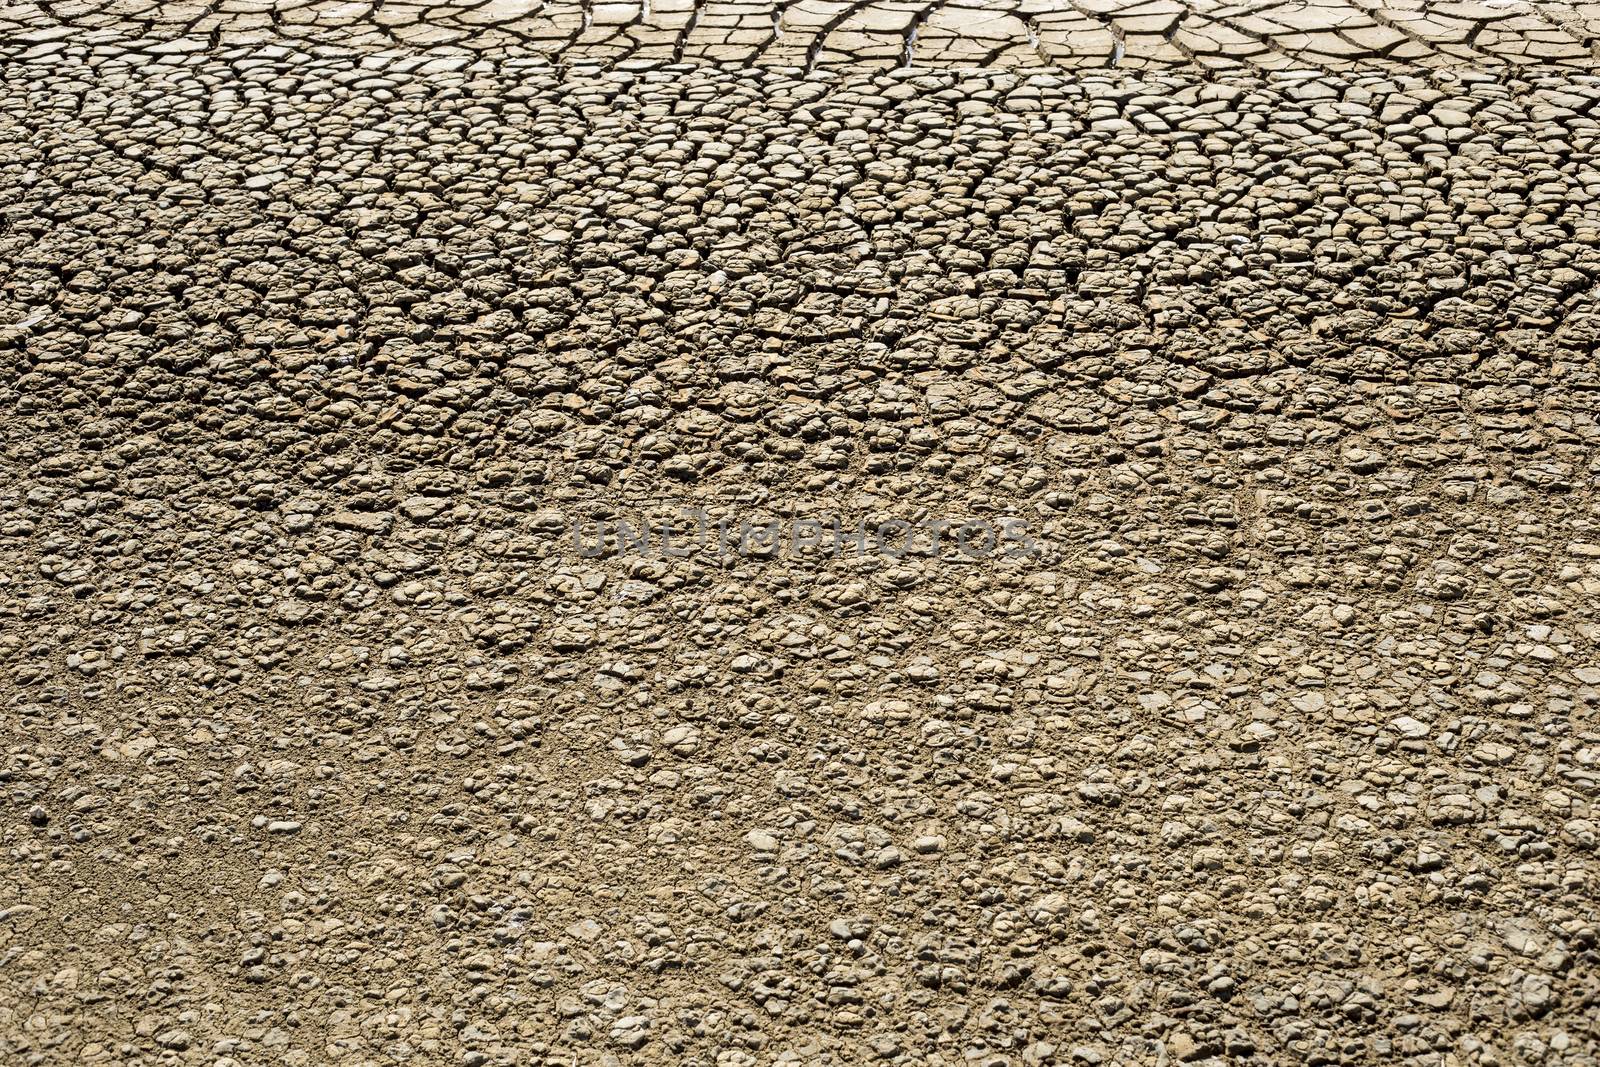 Texture of a cracked mud on a salt farm.